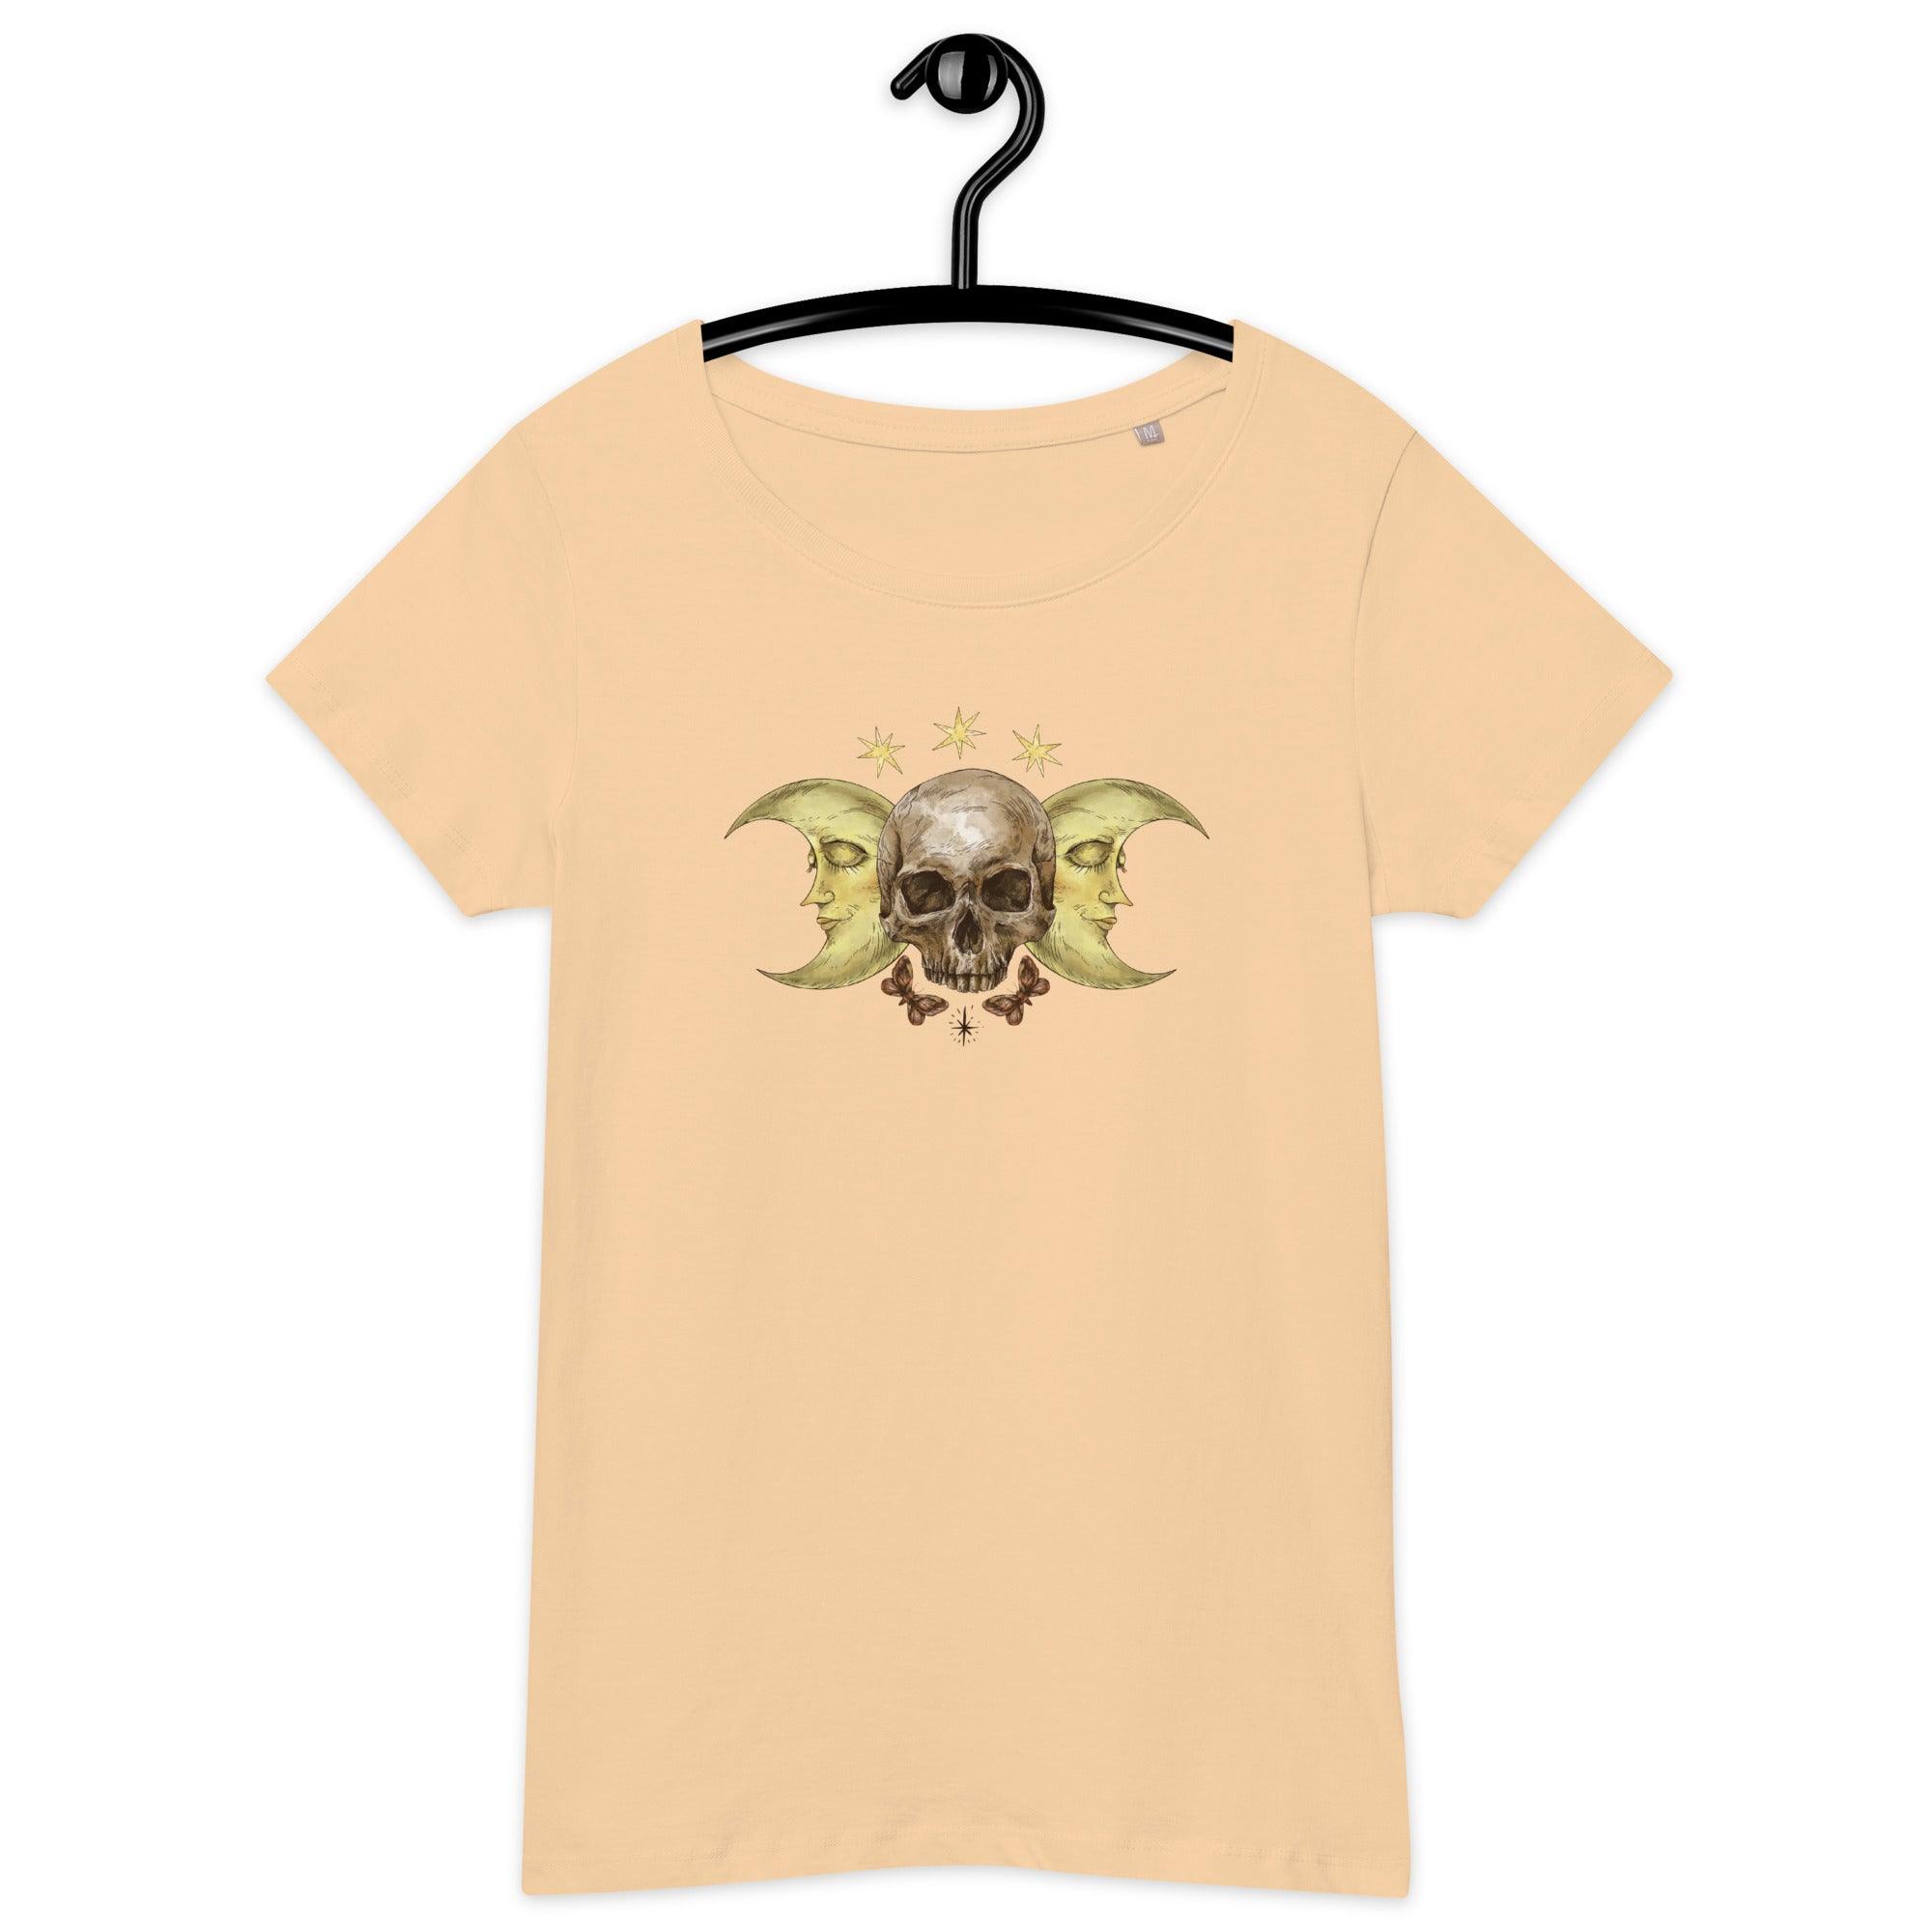 Tshirt básica de tecido orgânico Astros - My dear oraculo store